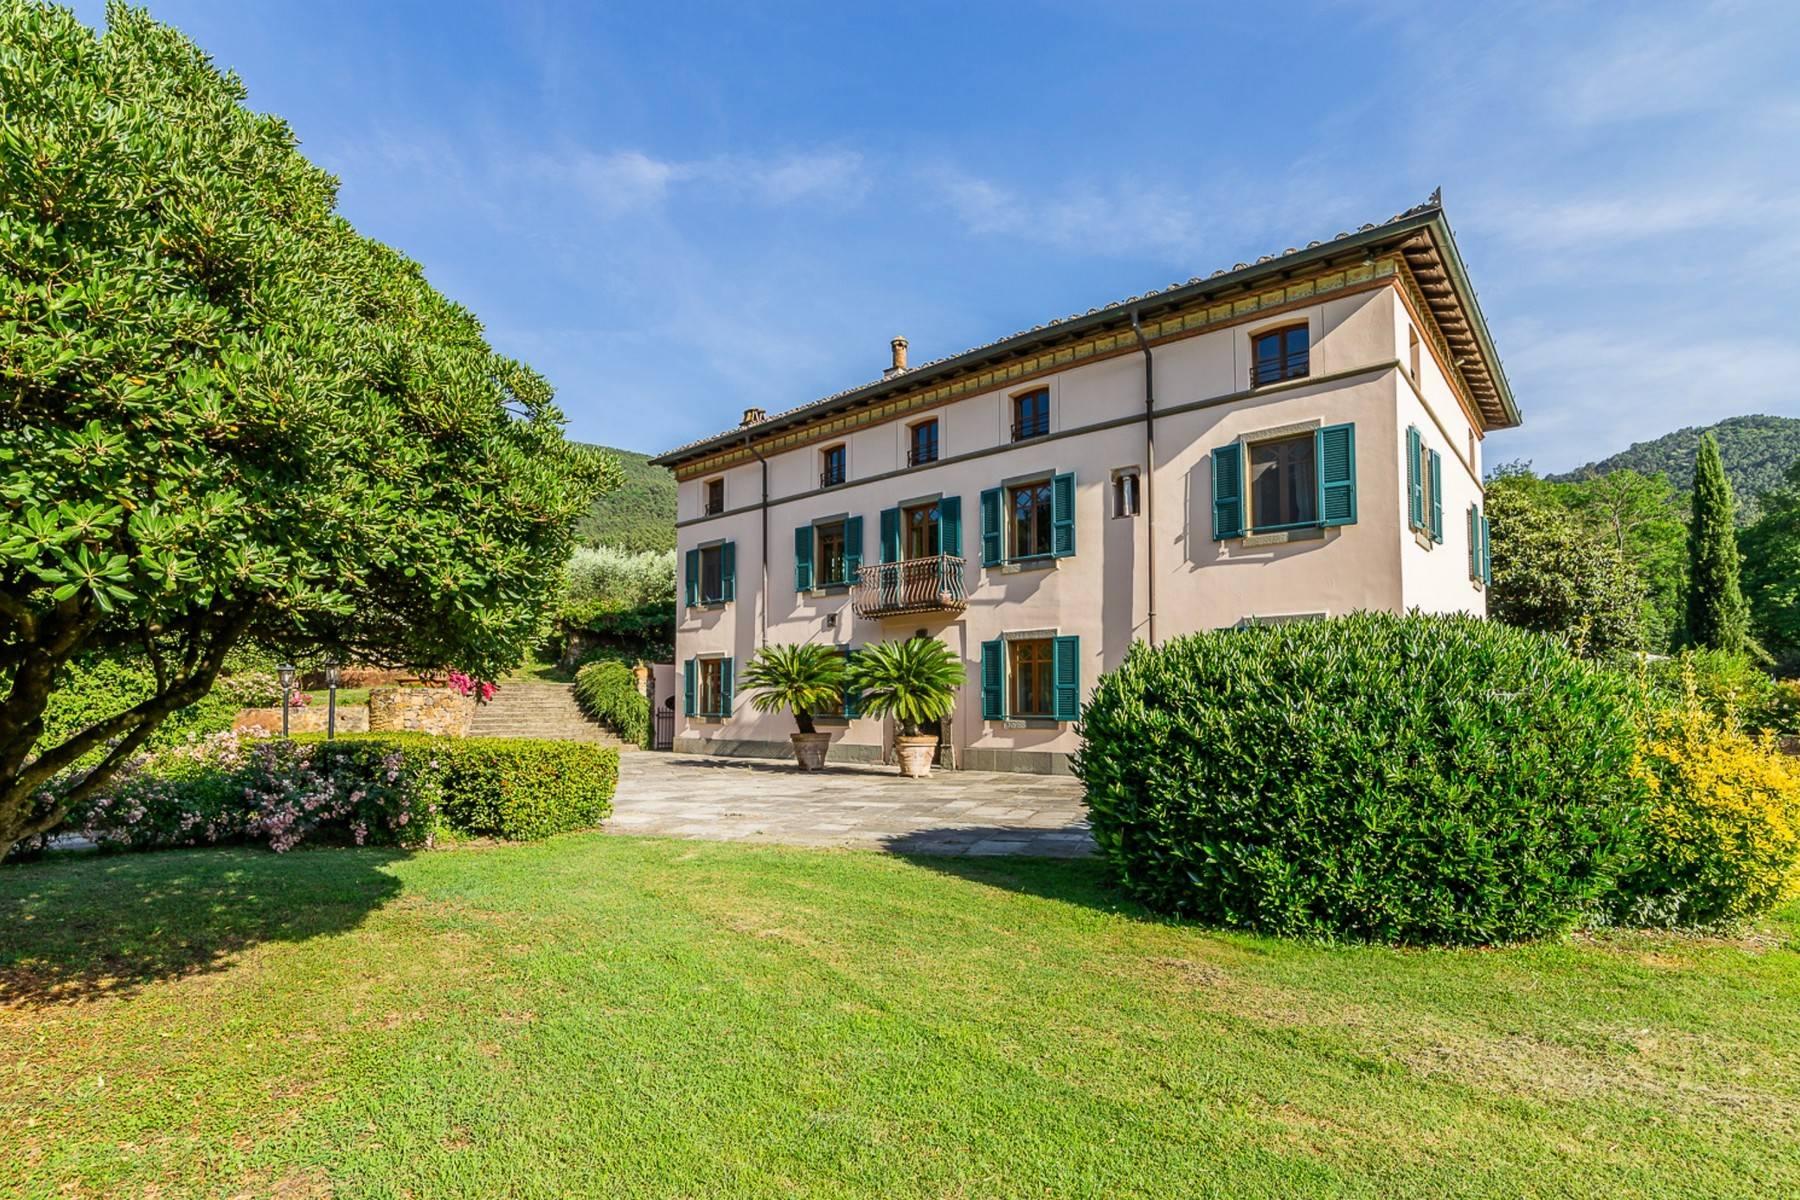 Wunderschönes und historisches Luxusresort inmitten eines privaten Parks südlich von Lucca - 5